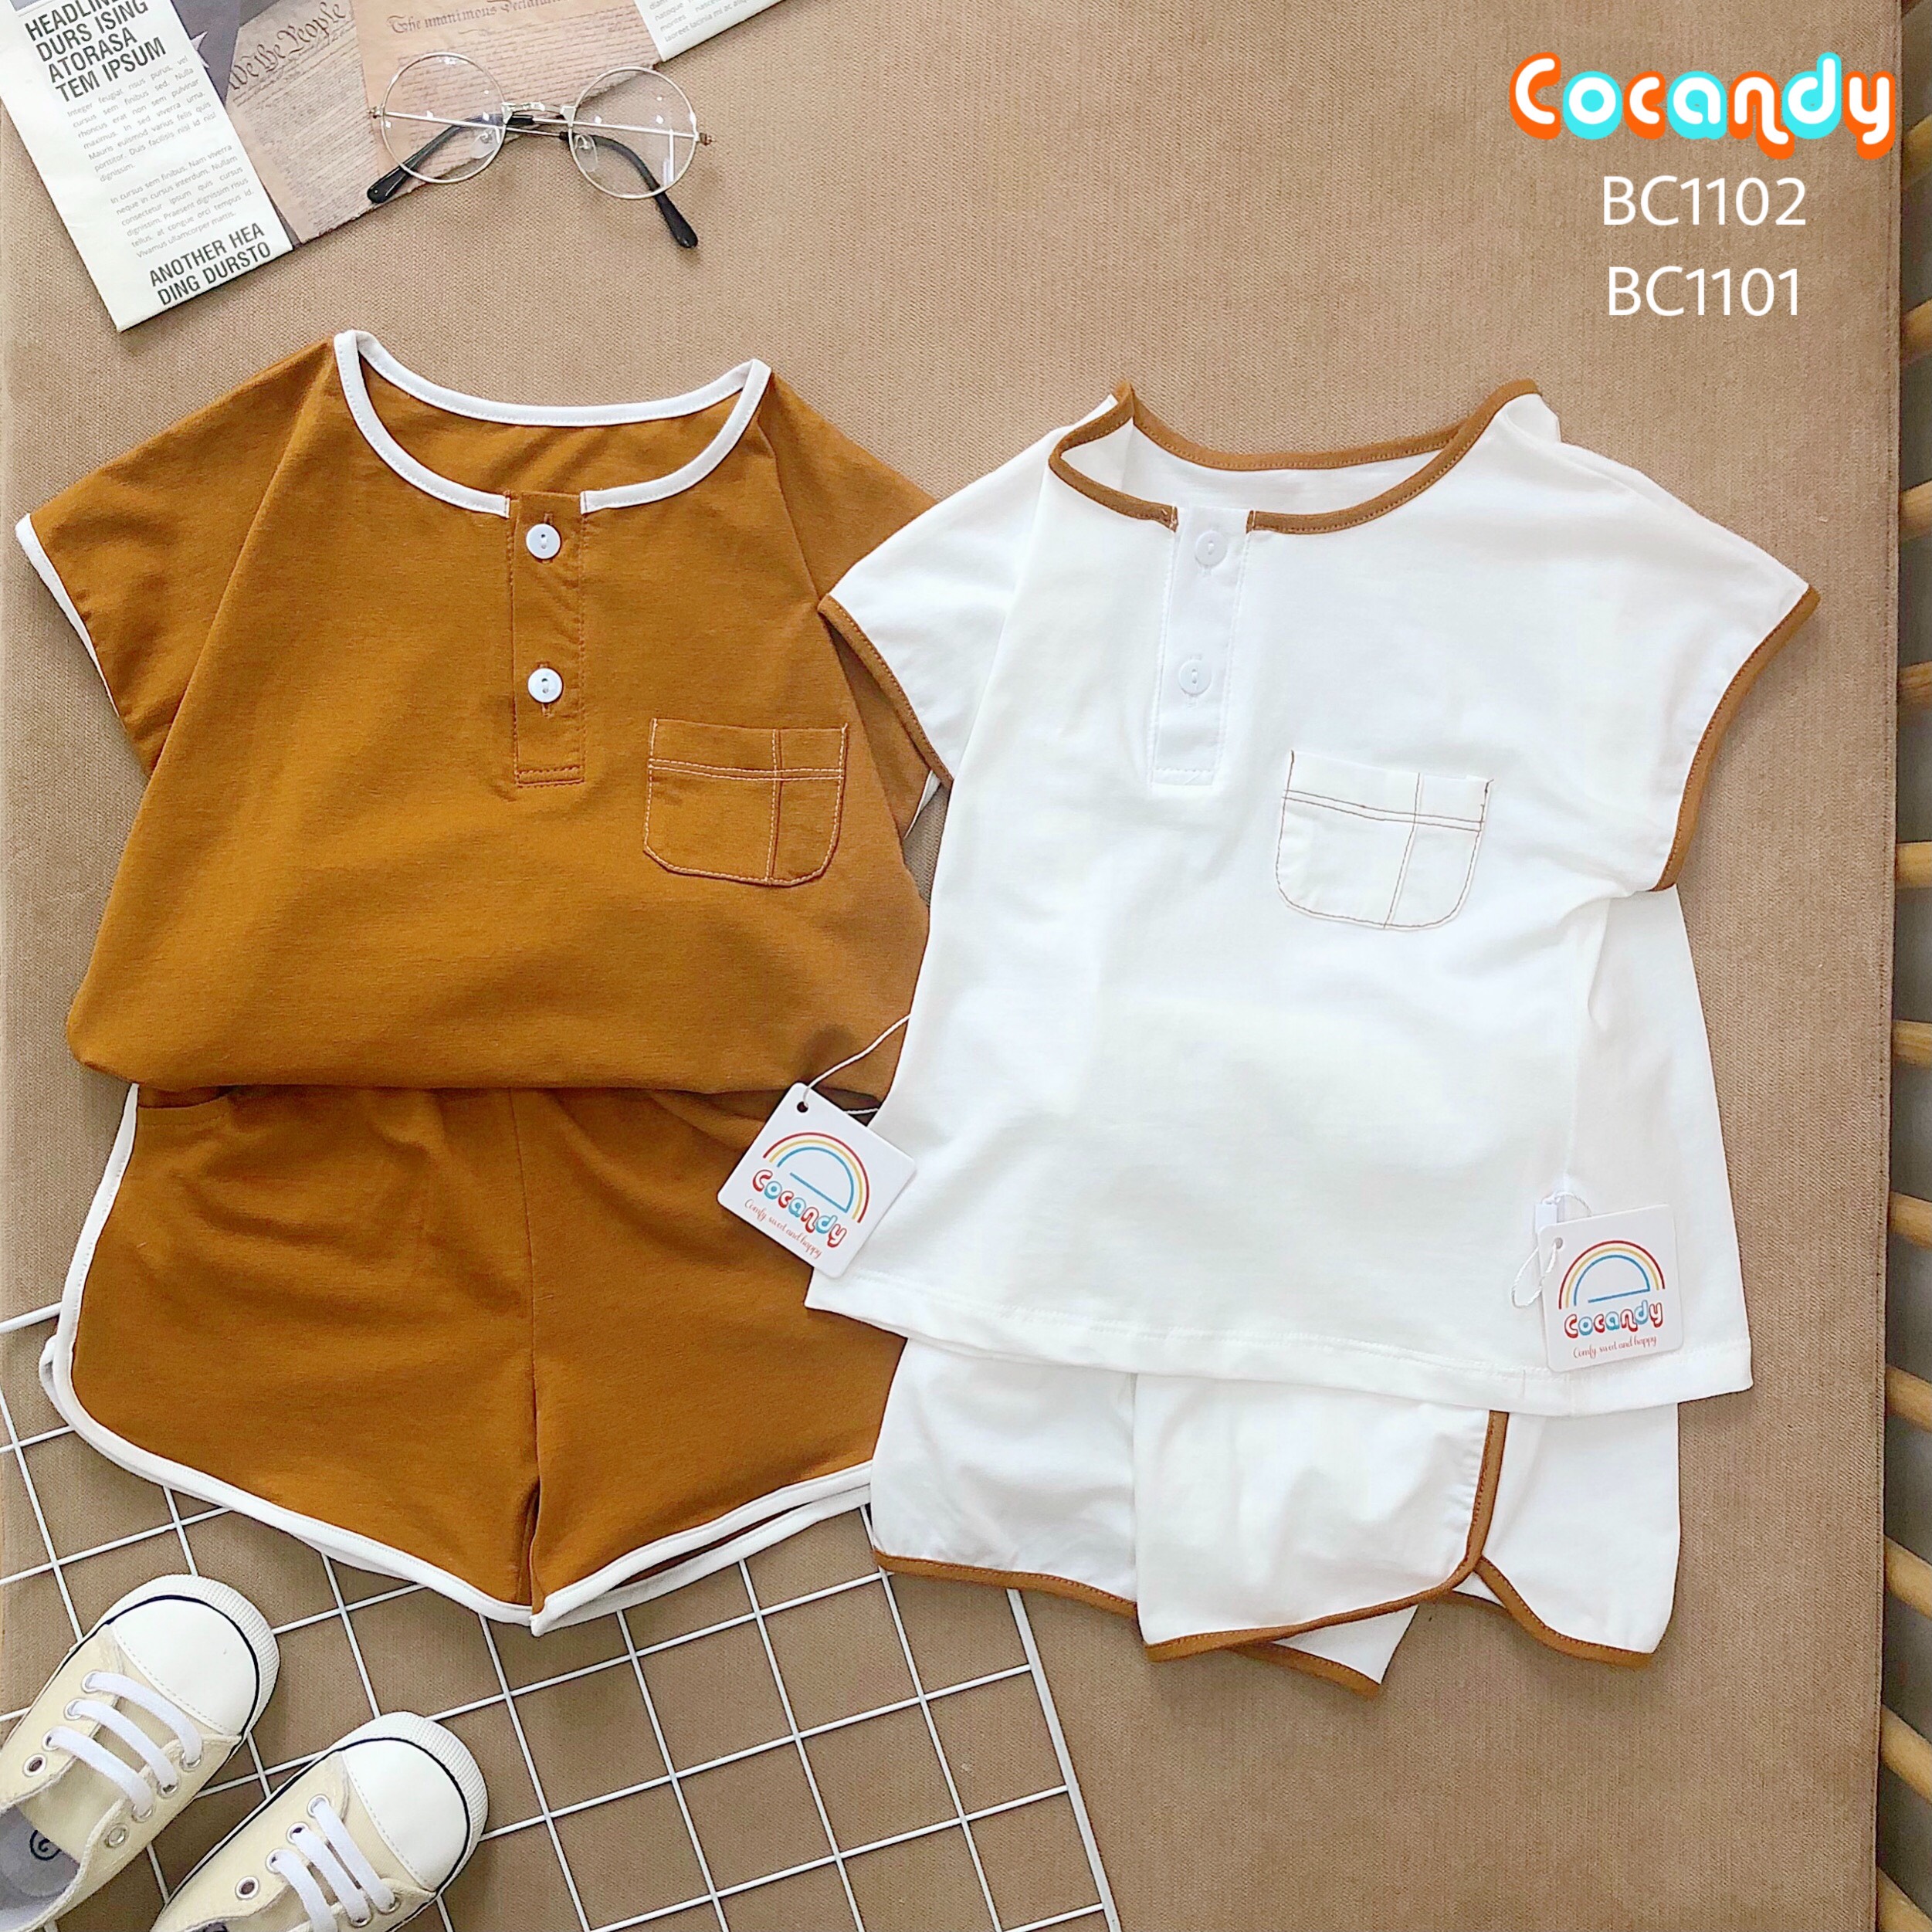 Cocandy Official Store Bộ quần áo thun cotton viền trắng nâu cho bé